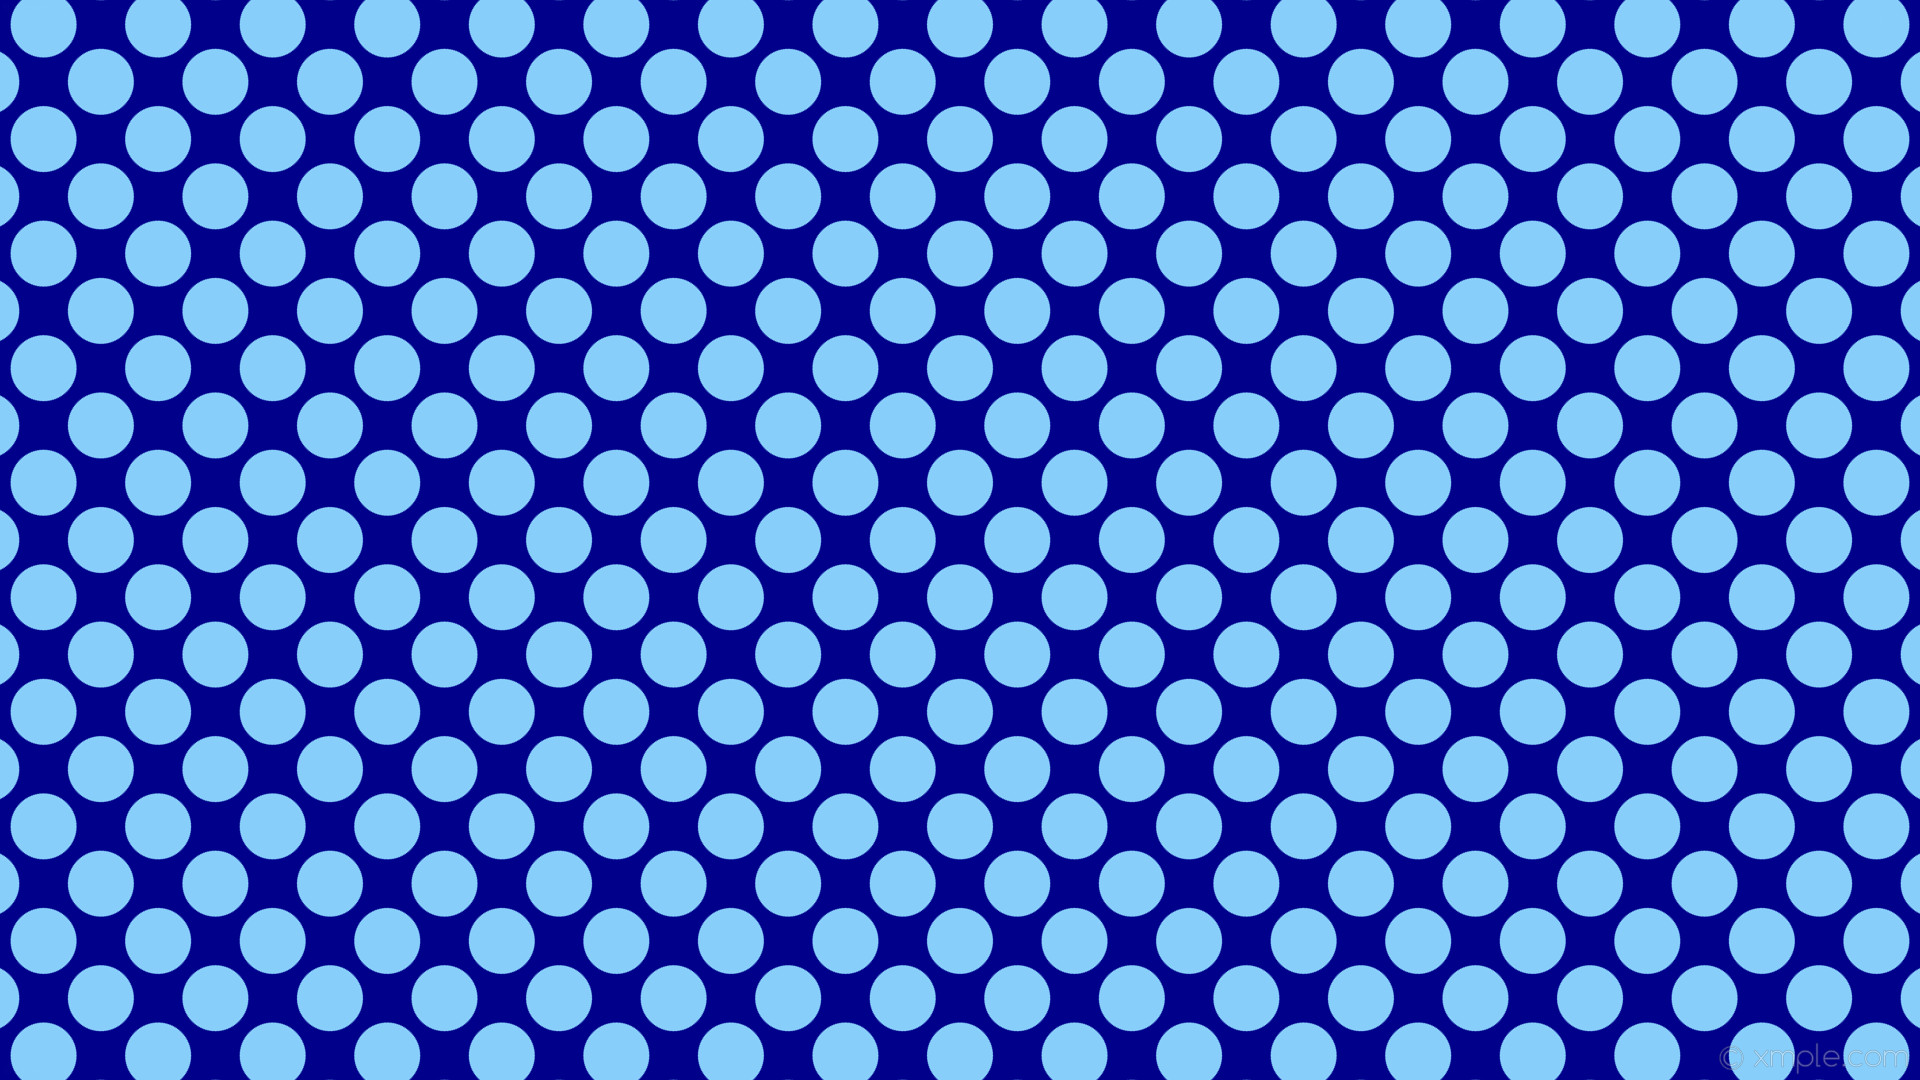 Wallpaper spots blue polka dots dark blue light sky blue b cefa 135